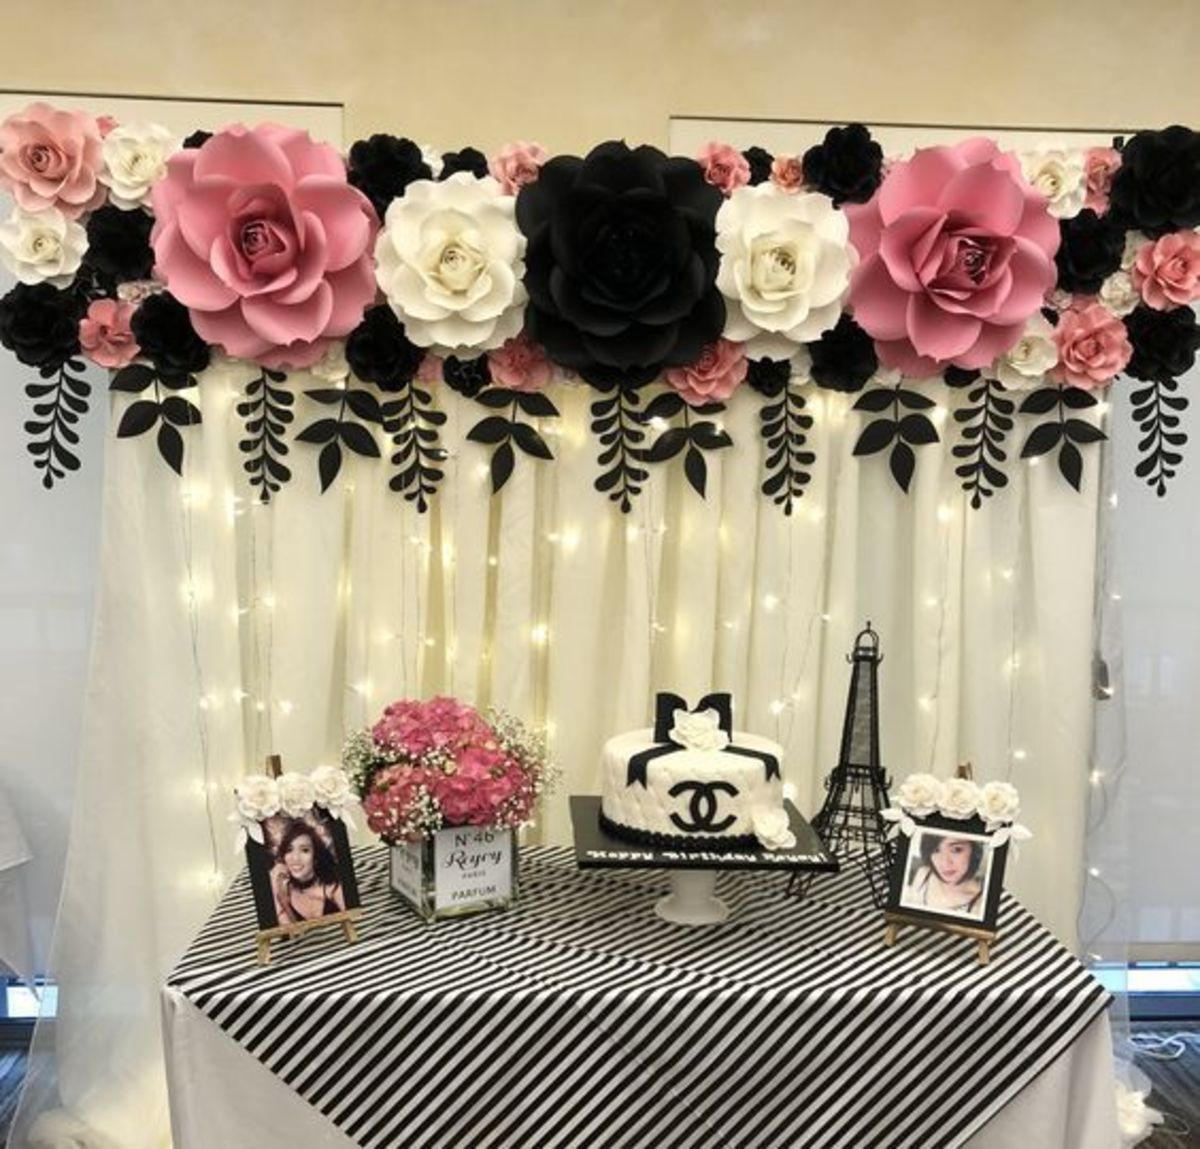 35+ Easy DIY Wedding Decorations on a Budget - Wedding Backdrop